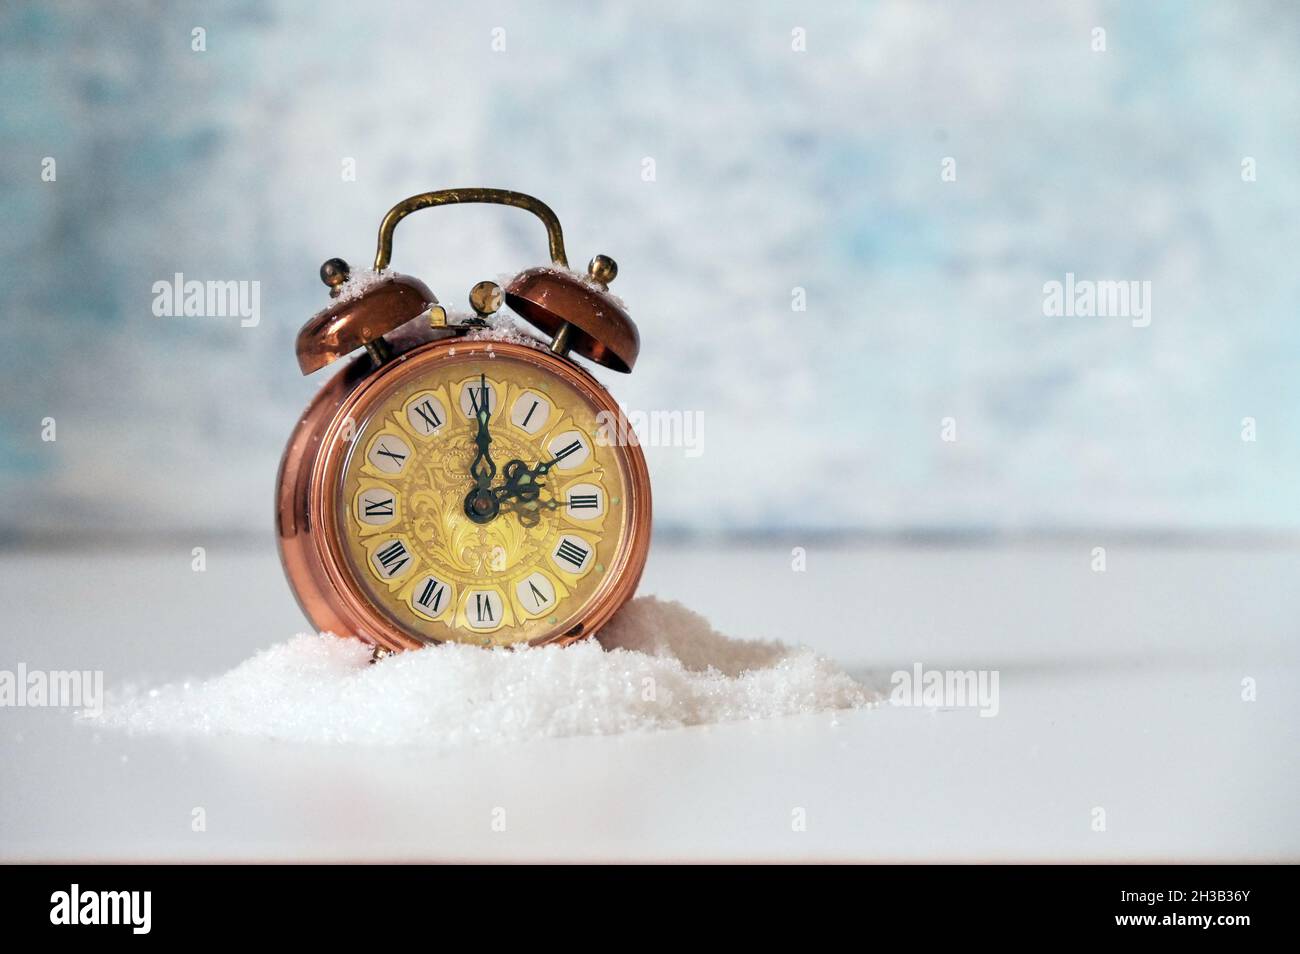 Reloj despertador vintage en nieve artificial que muestra el cambio de reloj a la hora de invierno, fondo azul claro con espacio de copia, enfoque seleccionado, profundidad estrecha de fie Foto de stock